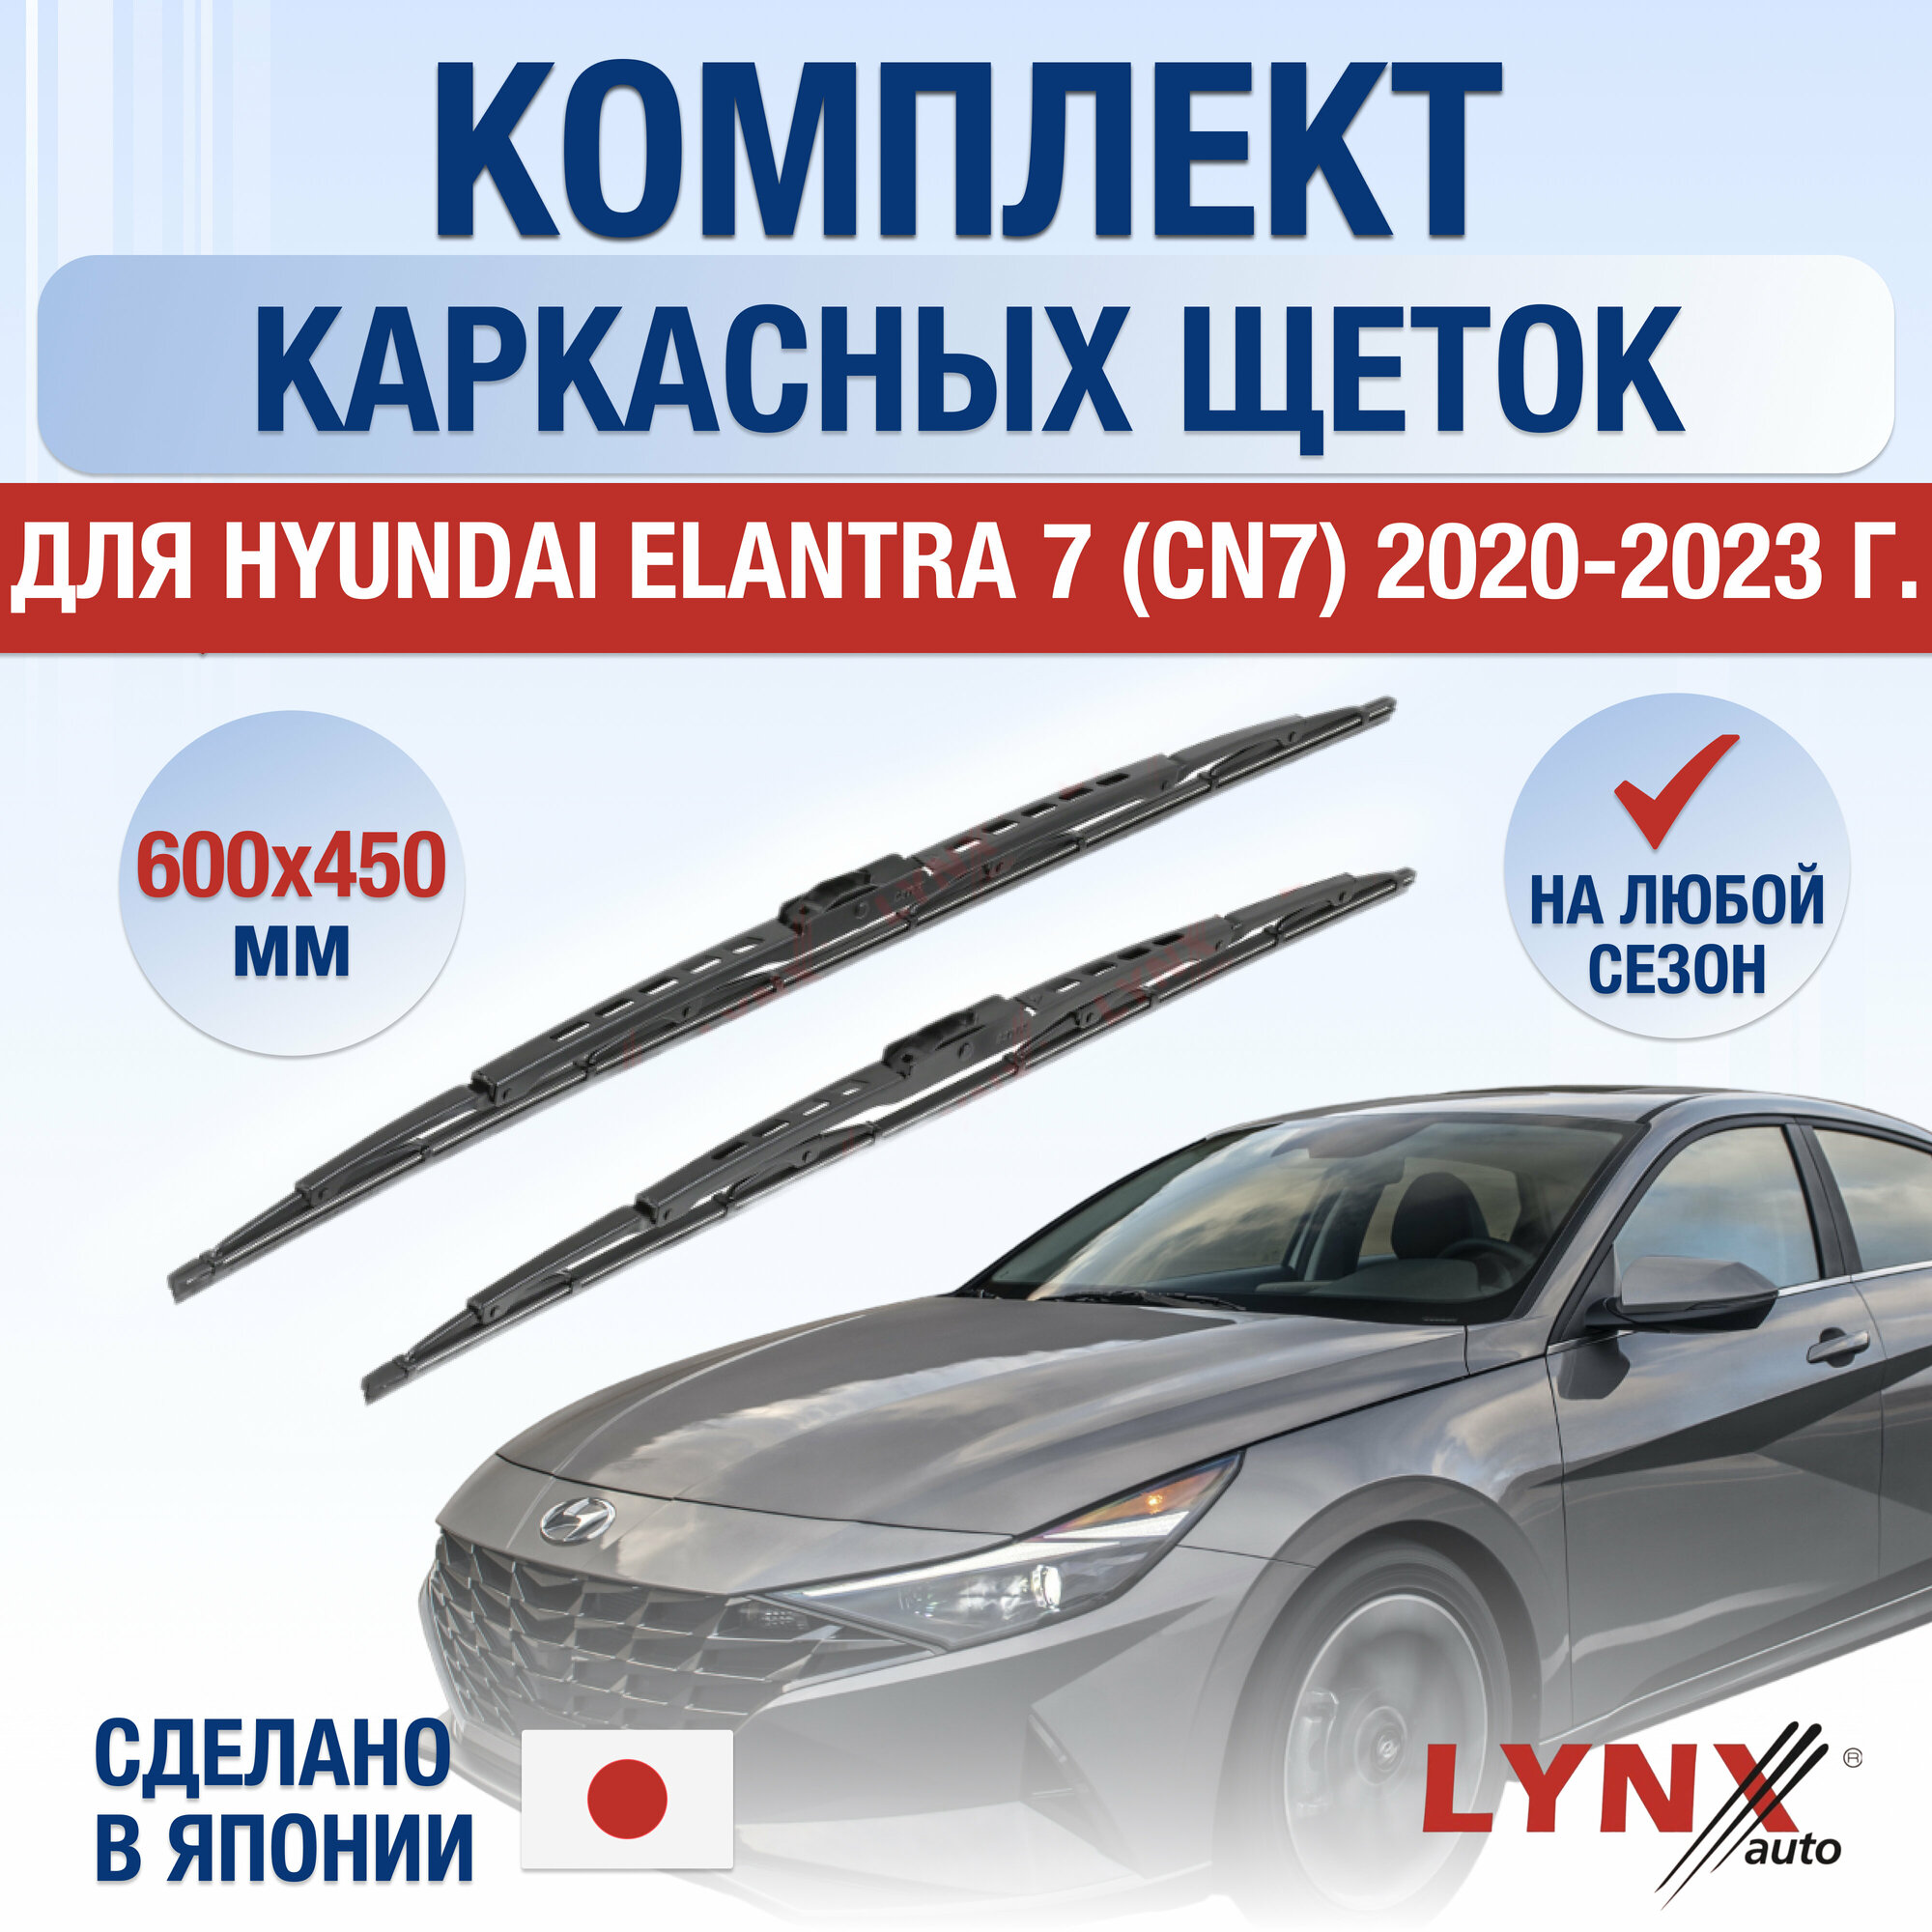 Щетки стеклоочистителя для Hyundai Elantra 7 (CN7) / 2020 2021 2022 2023 / Комплект каркасных дворников 600 450 мм Хендай Элантра